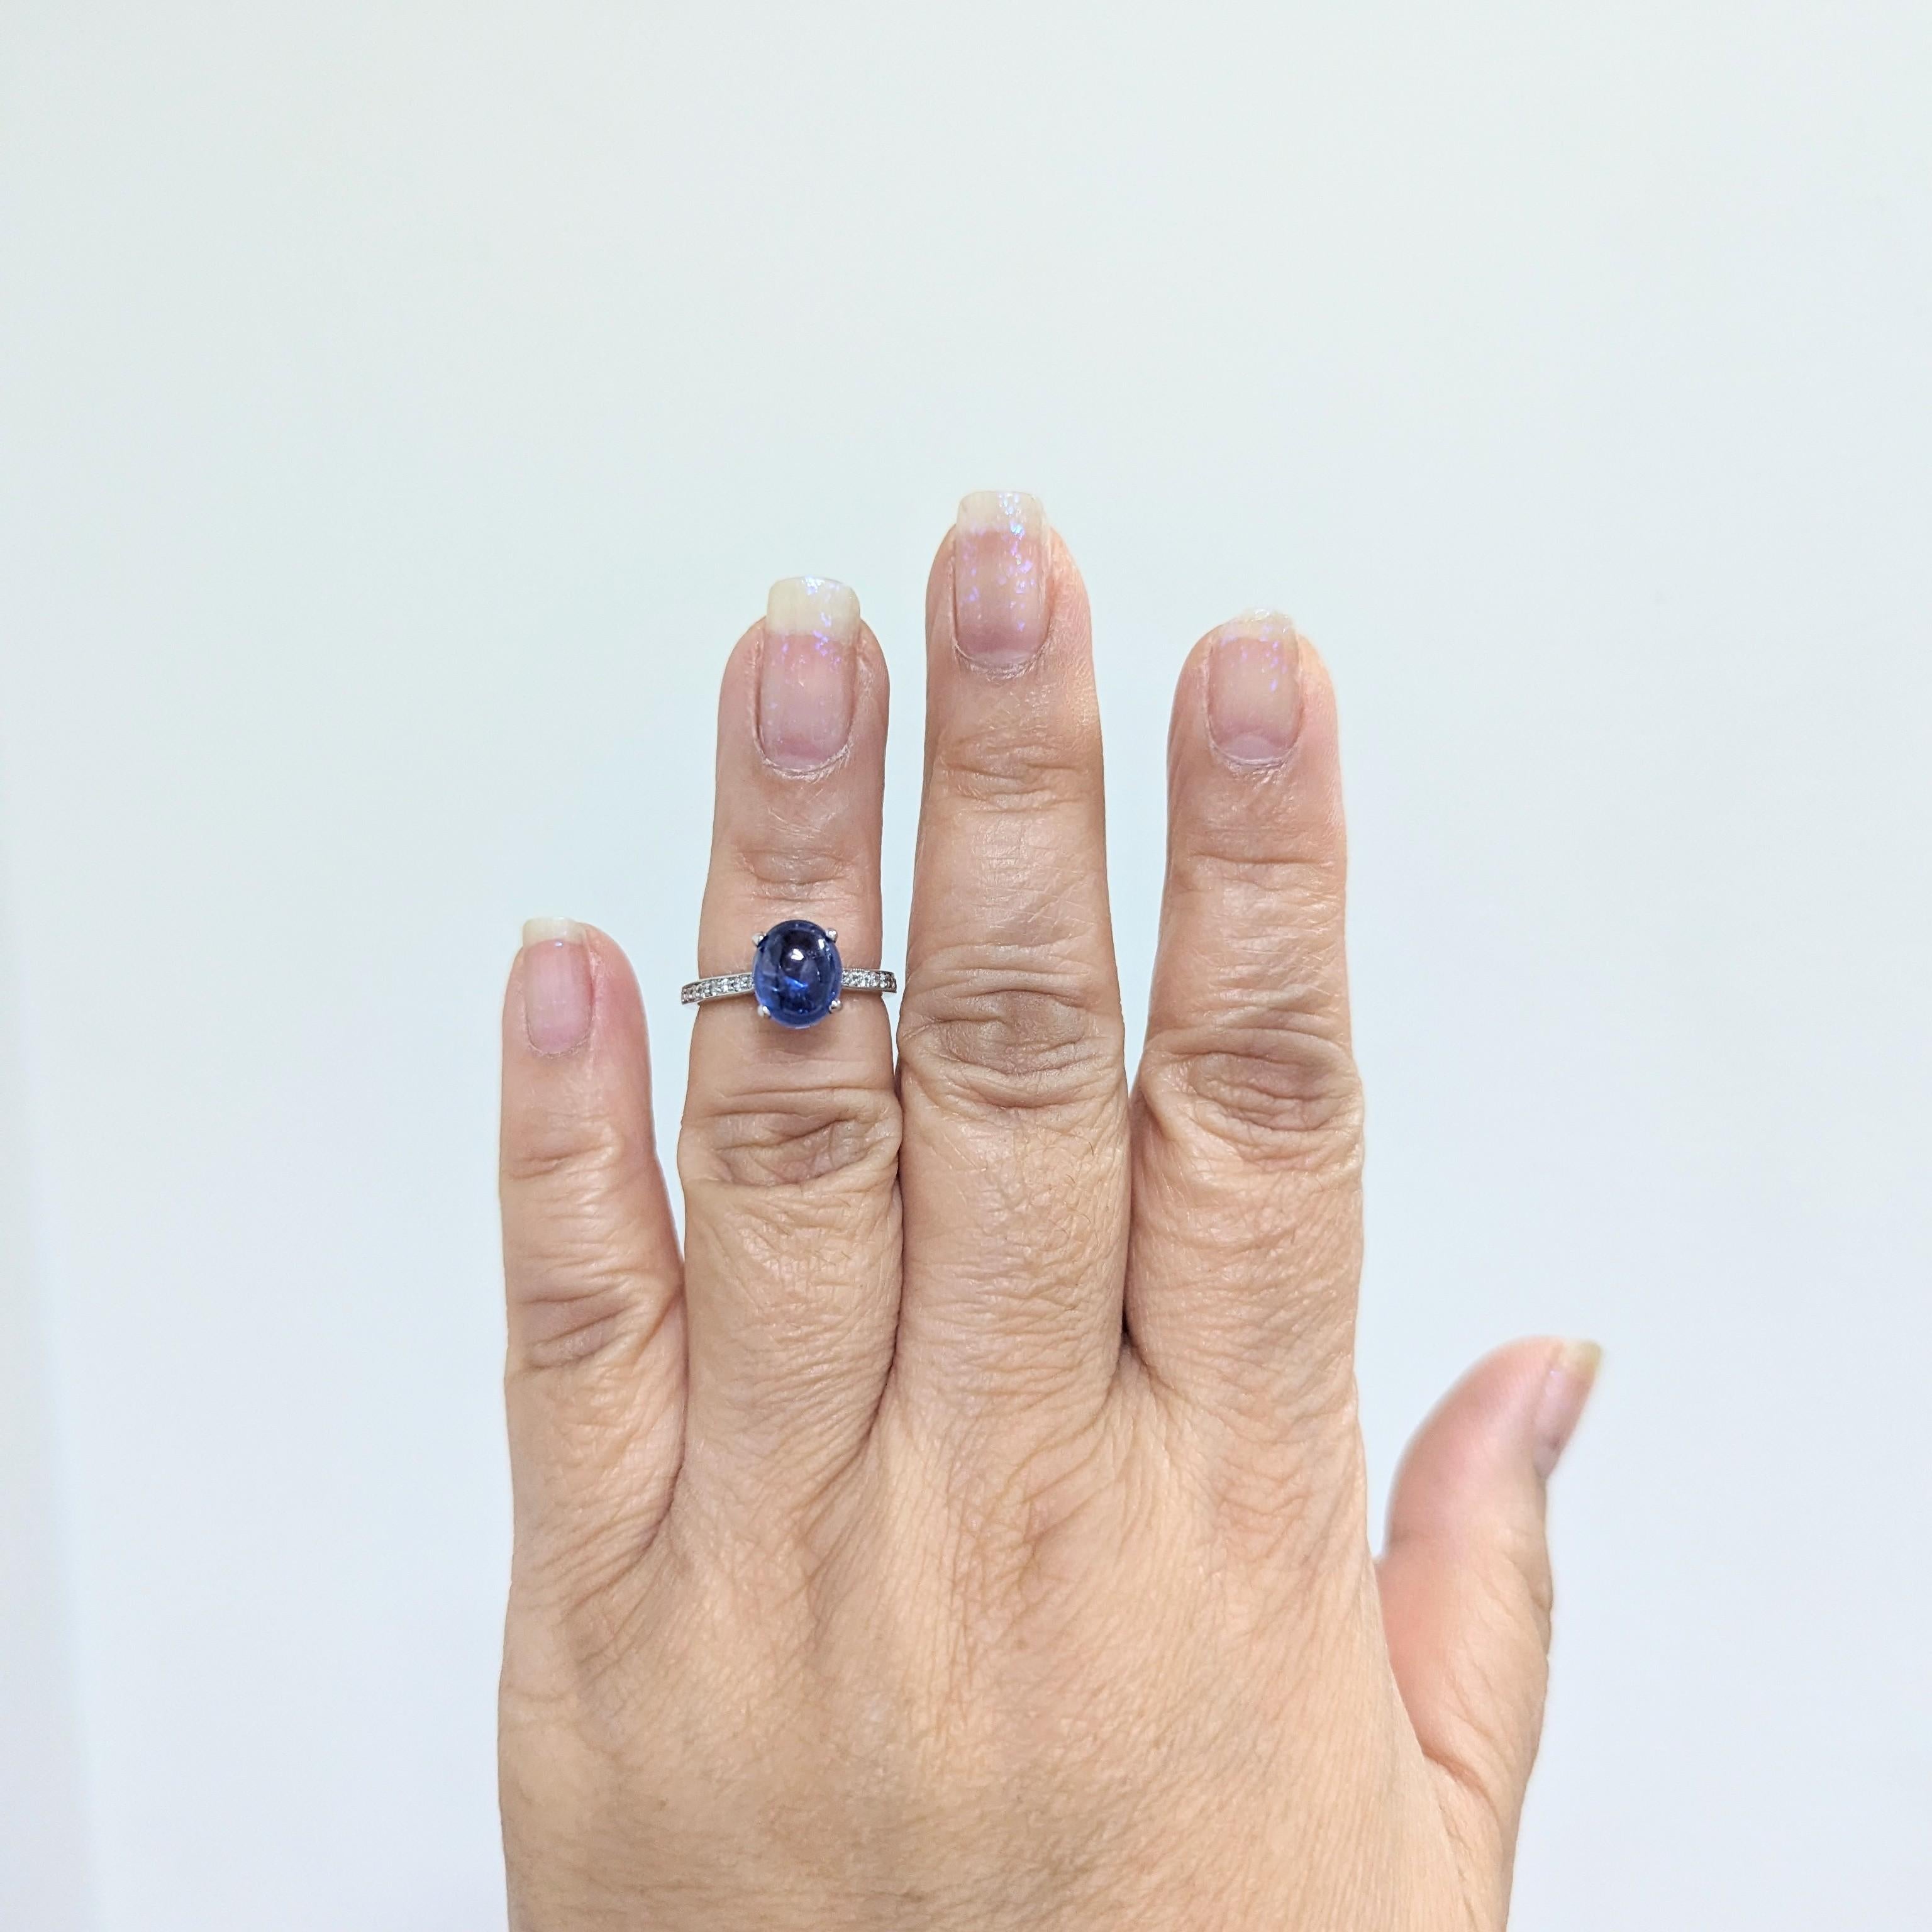 Magnifique cabochon ovale de saphir bleu de 3,53 ct. avec des ronds de diamants blancs de 0,05 ct.  Fabriqué à la main en or blanc 14k.  Bague taille 5.5.